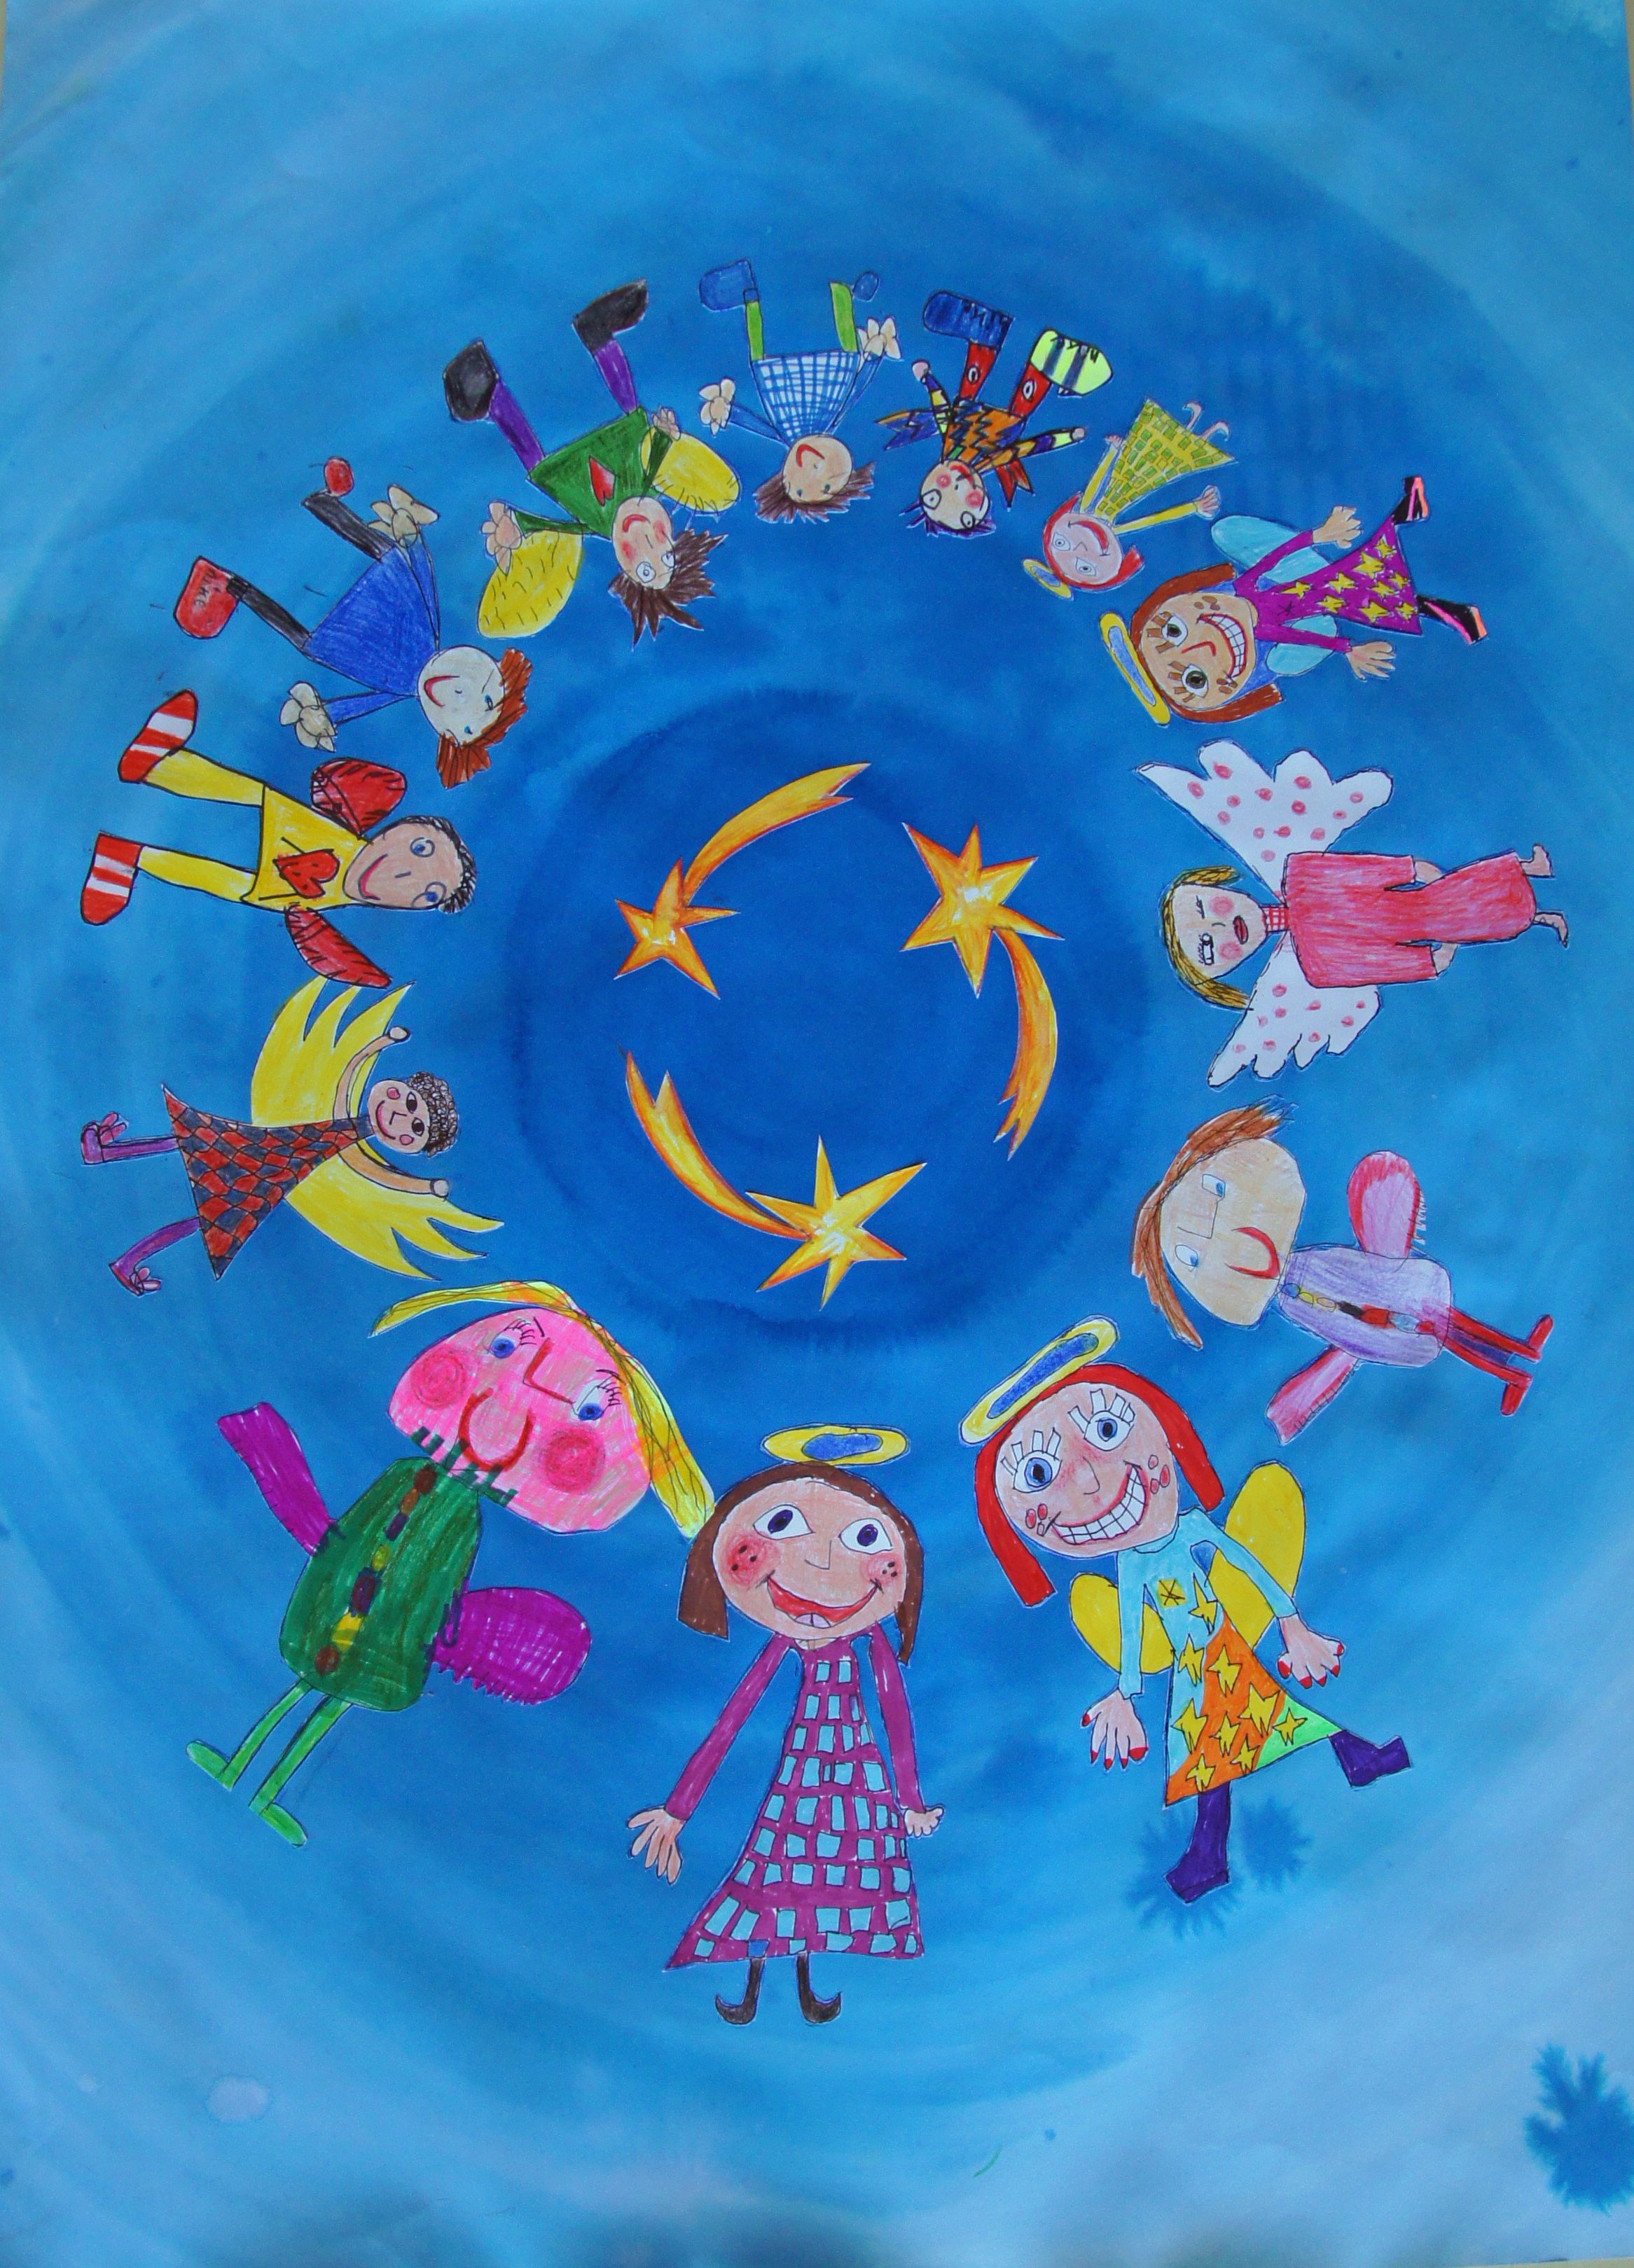 Das Gemälde zeigt zwölf bunte Engel, die im Kreis fliegen.